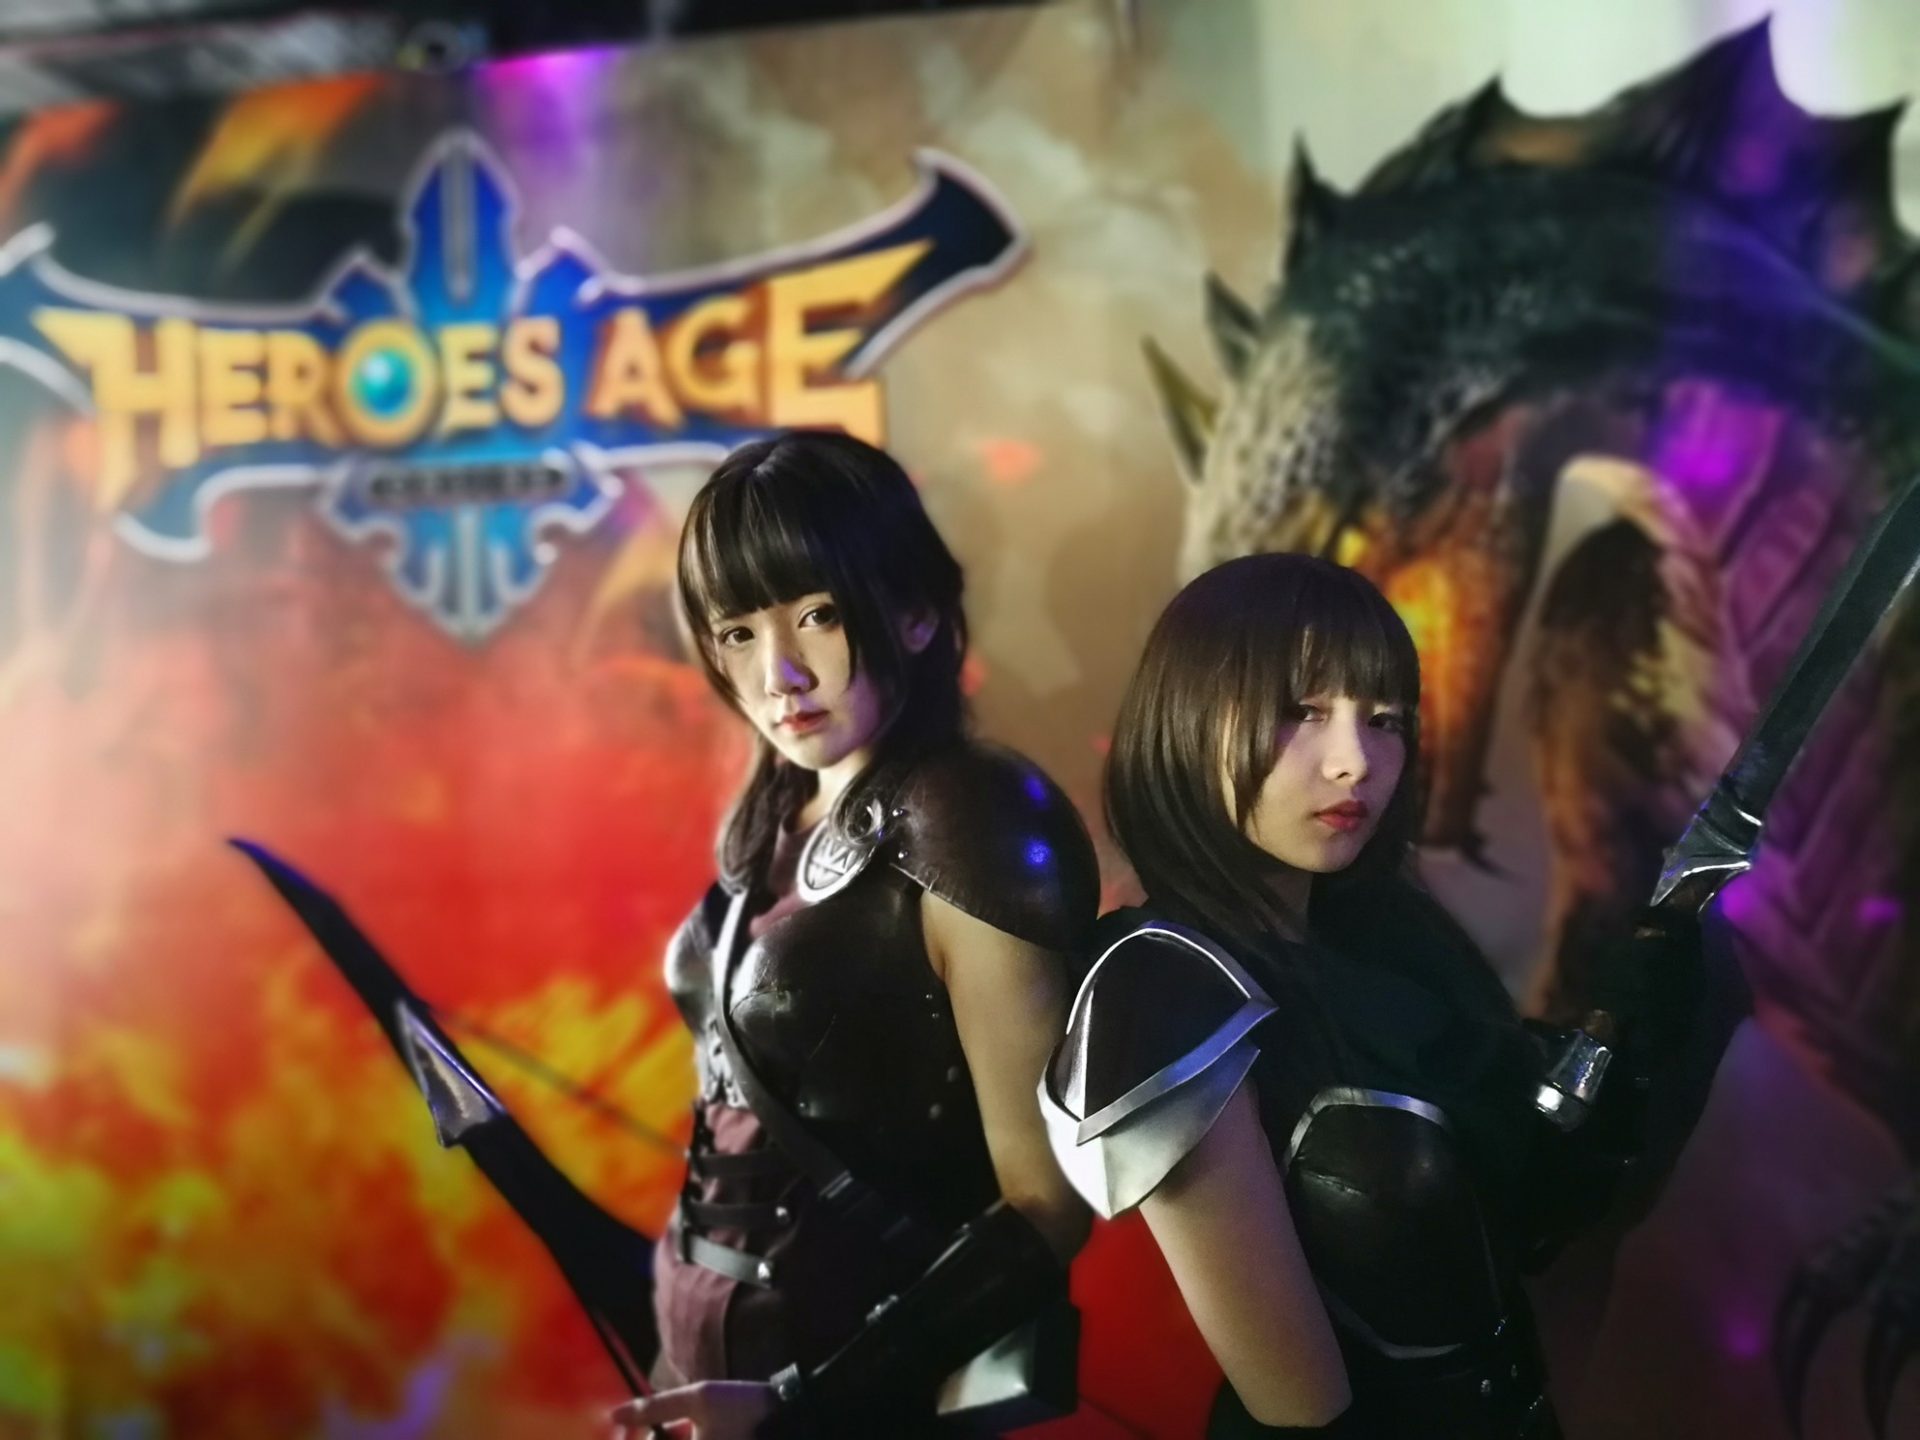 เปิดตัวแล้ว! Heroes Age Online เซิฟไทย สายลุย MMORPG ห้ามพลาด!